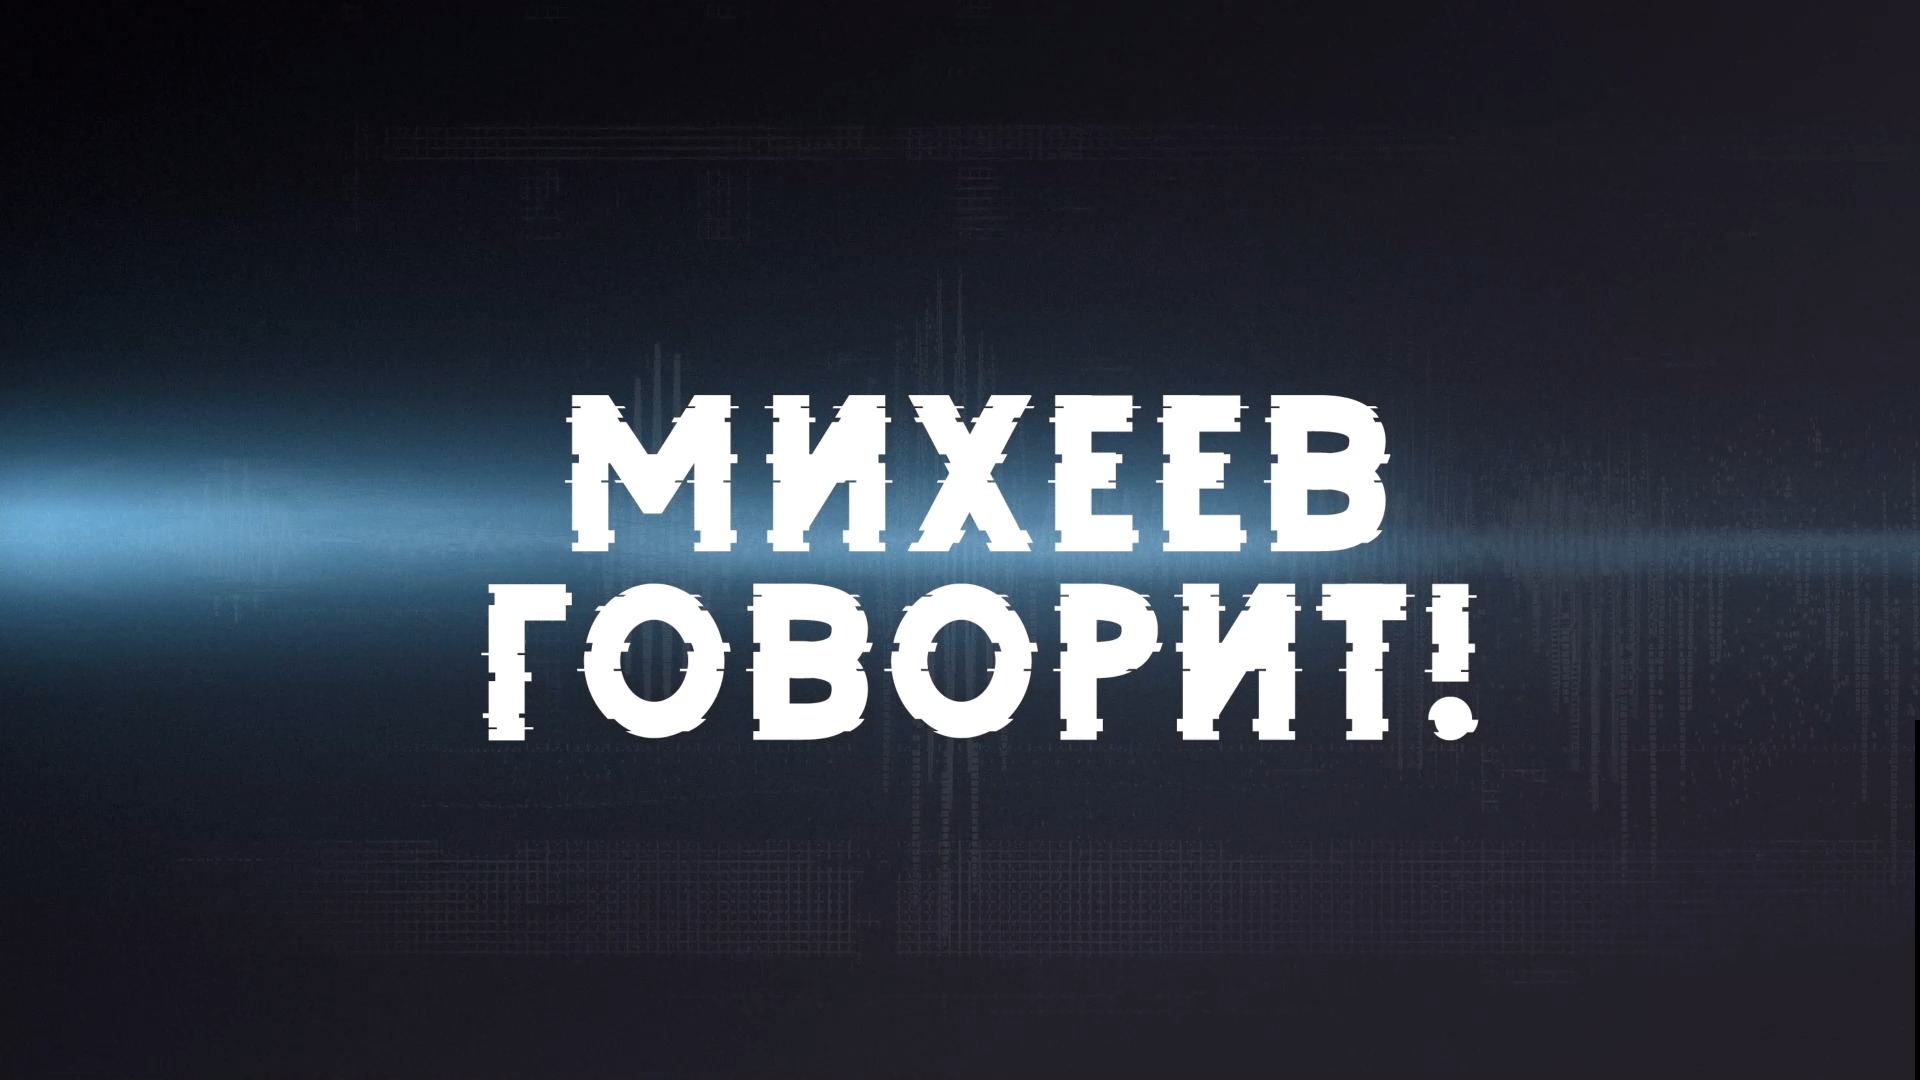 ⚡️Время Голованова | Михеев говорит!| 12 июля 2022 года